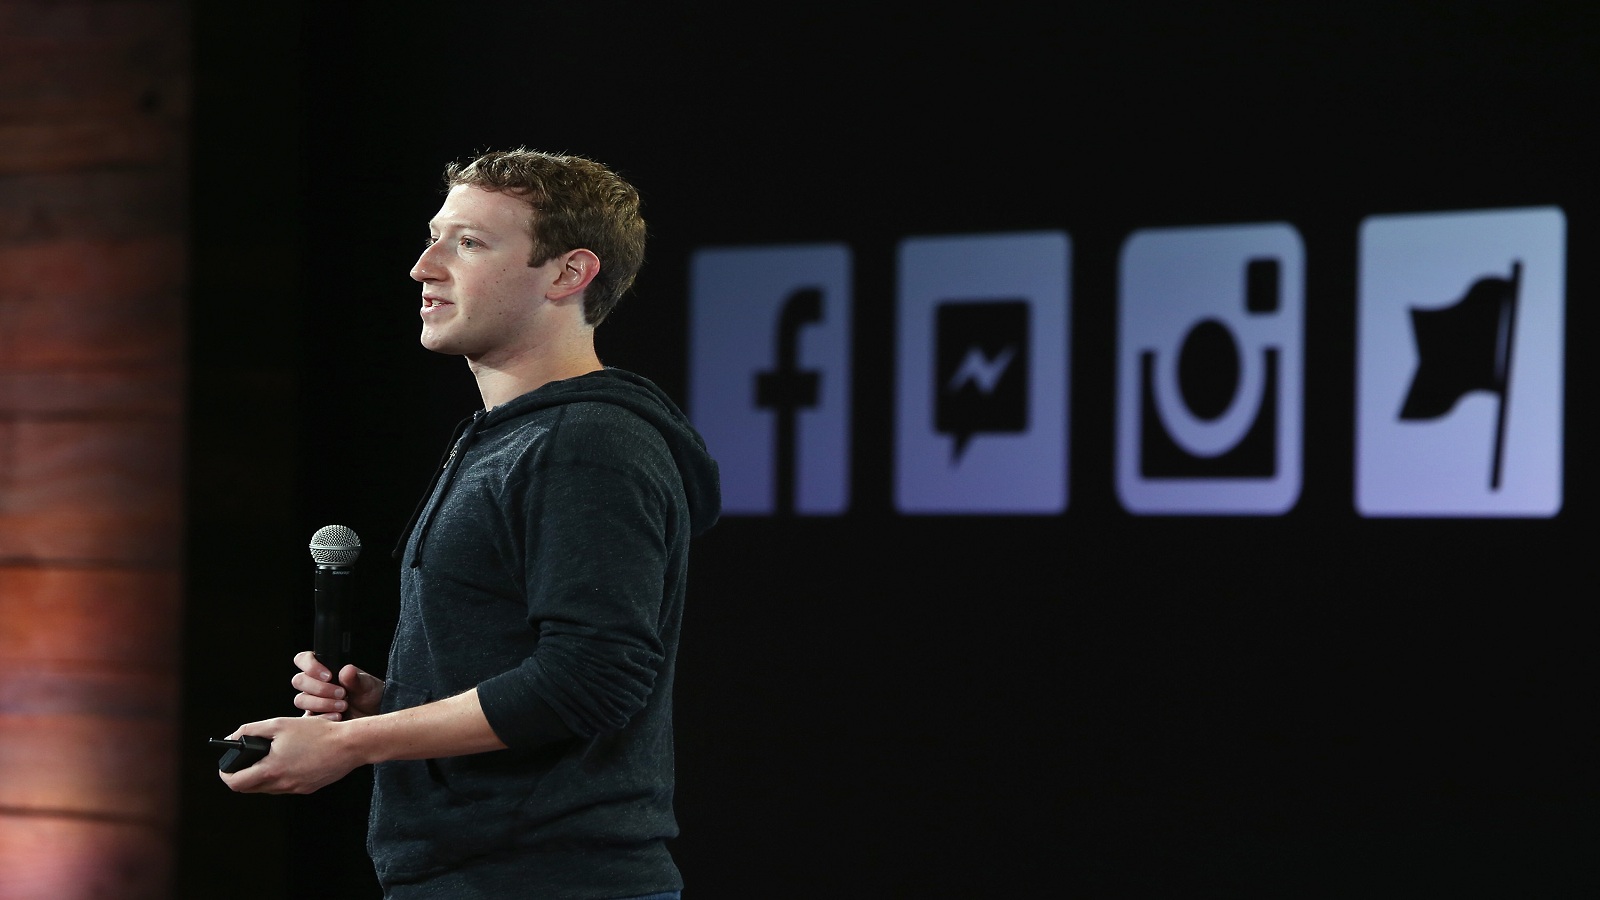 "فايسبوك" يتعاون مع الكونغرس ويسلّمه آلاف البيانات